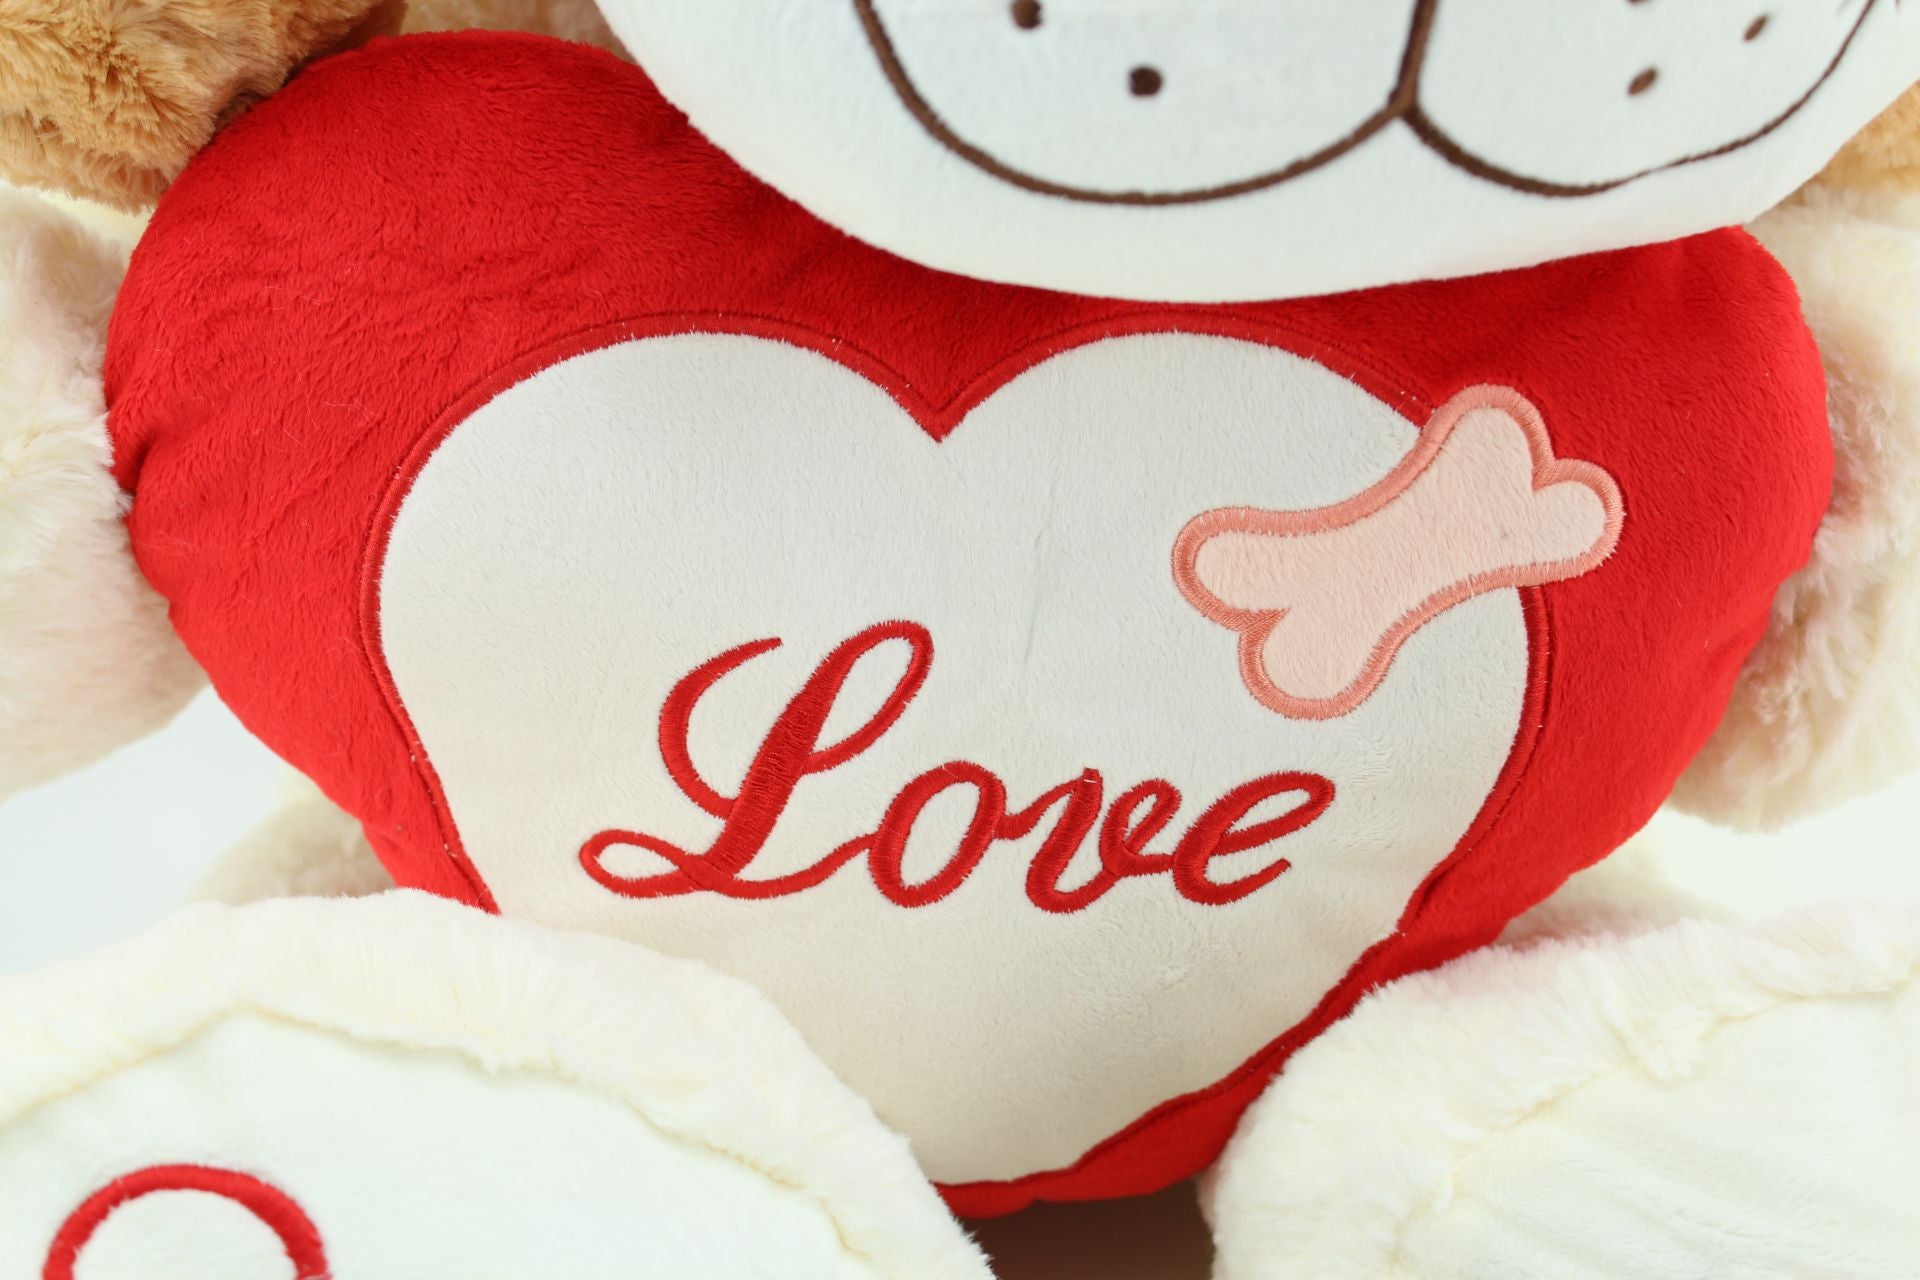 sweety toys 5390 'love' plüschhund in beige 90 cm mit herz, plüschbär aus premium qualität